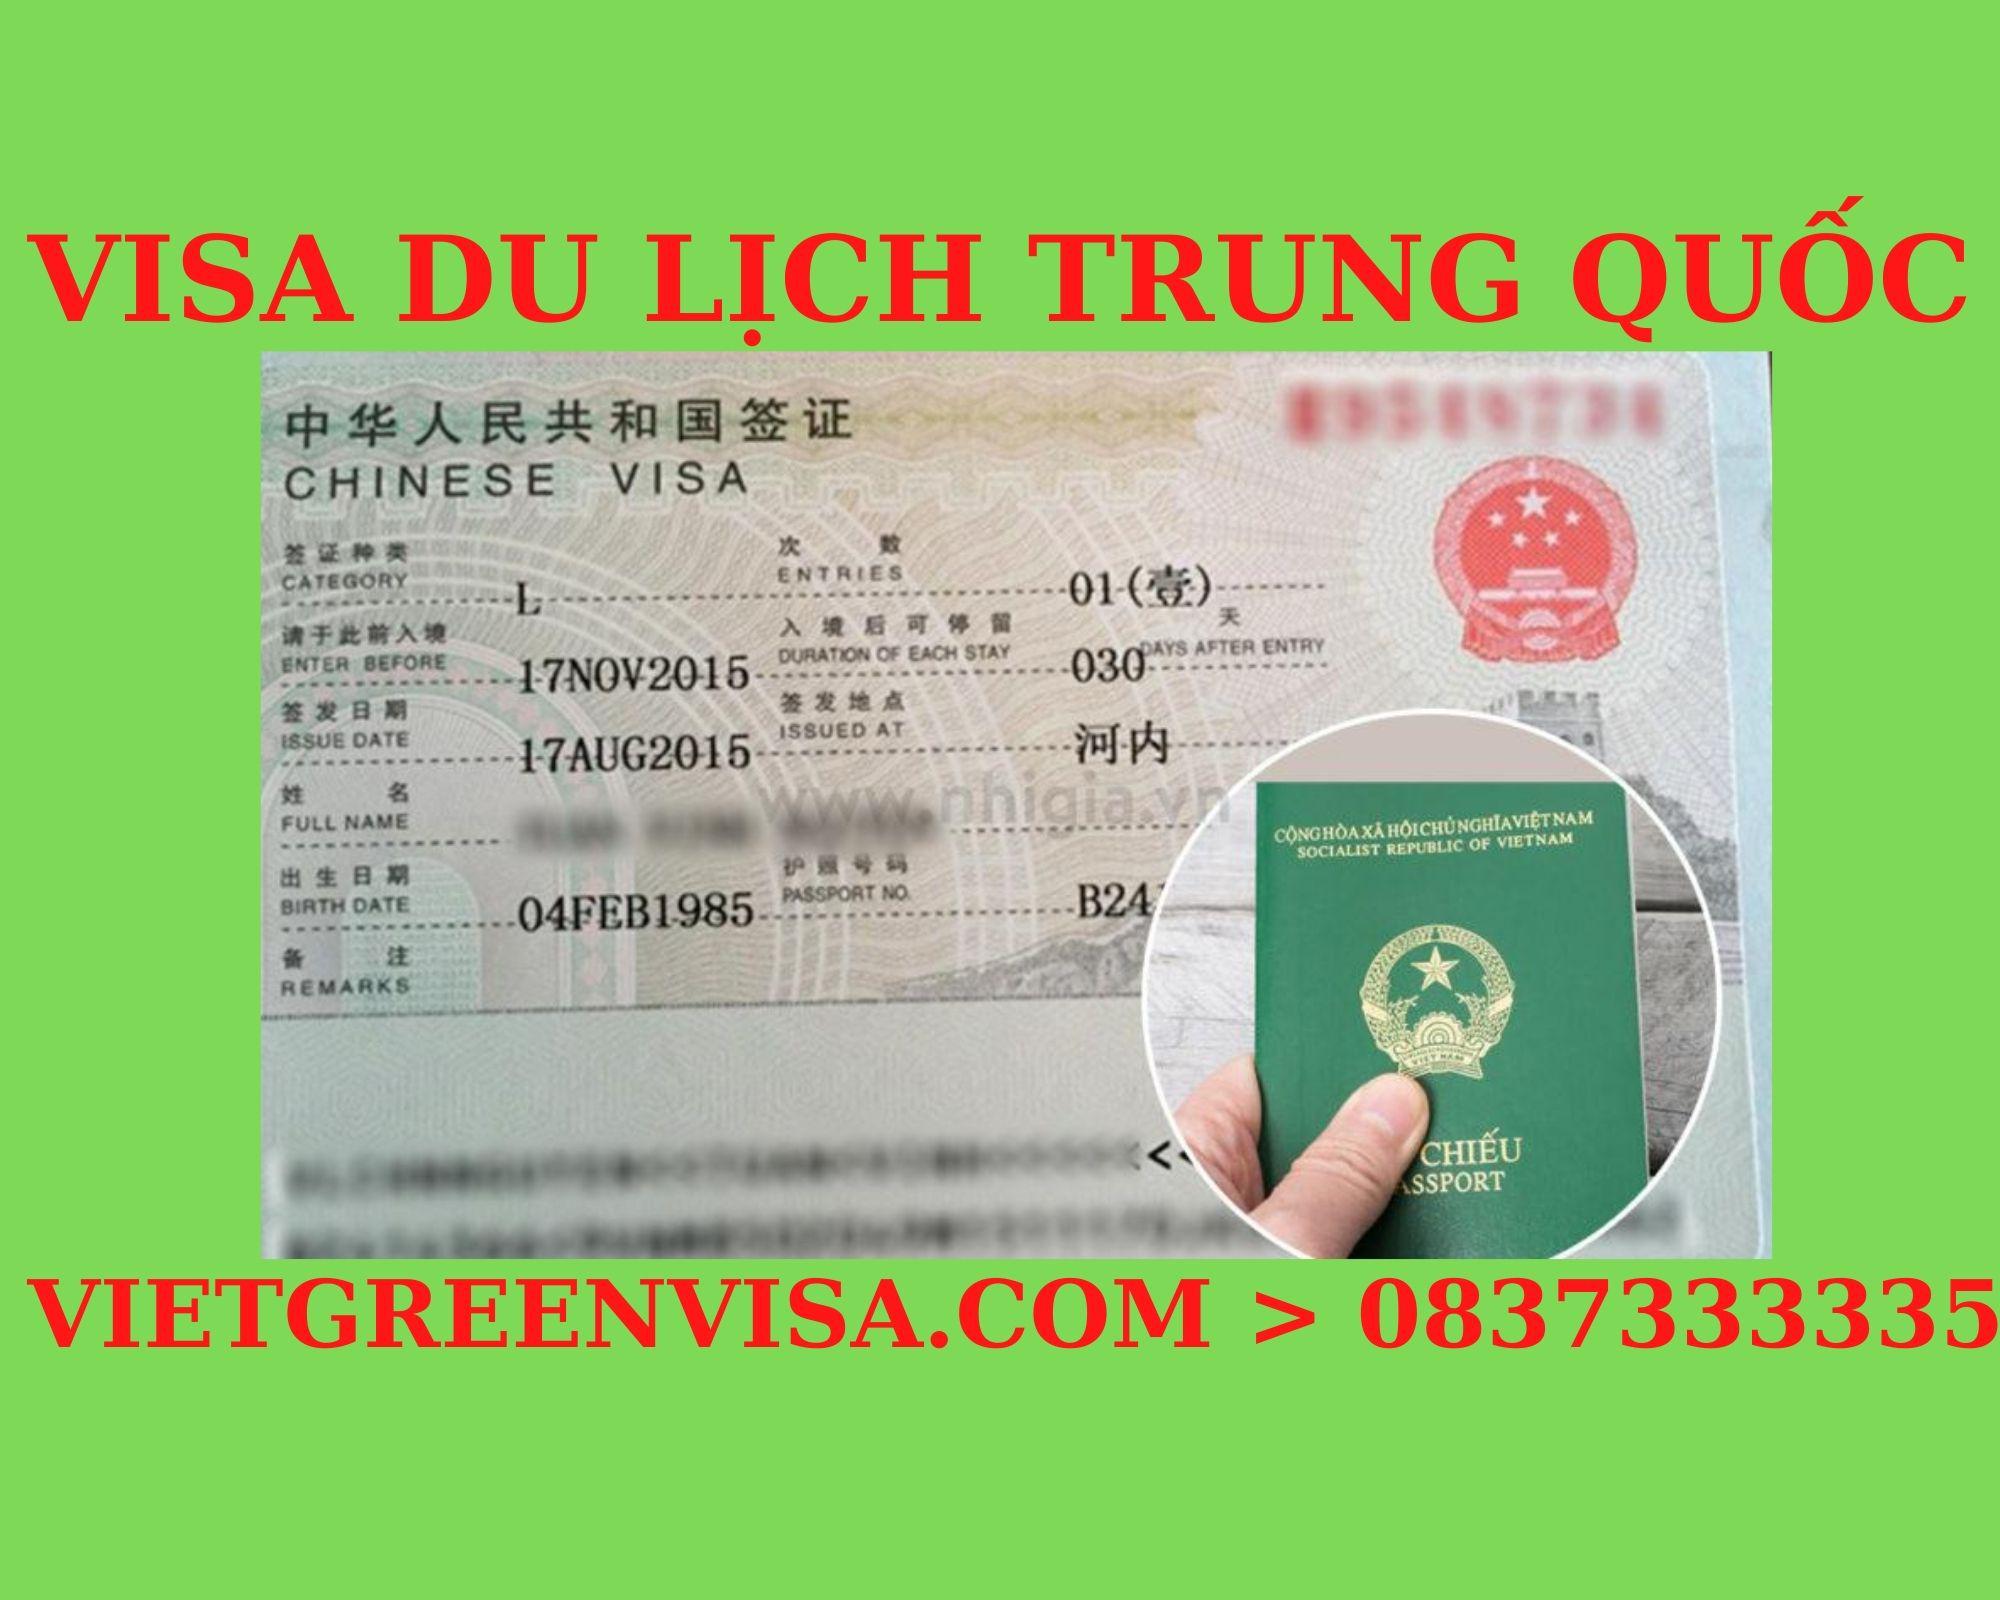 Dịch vụ visa Trung Quốc đi du lịch uy tín. Viet Green visa